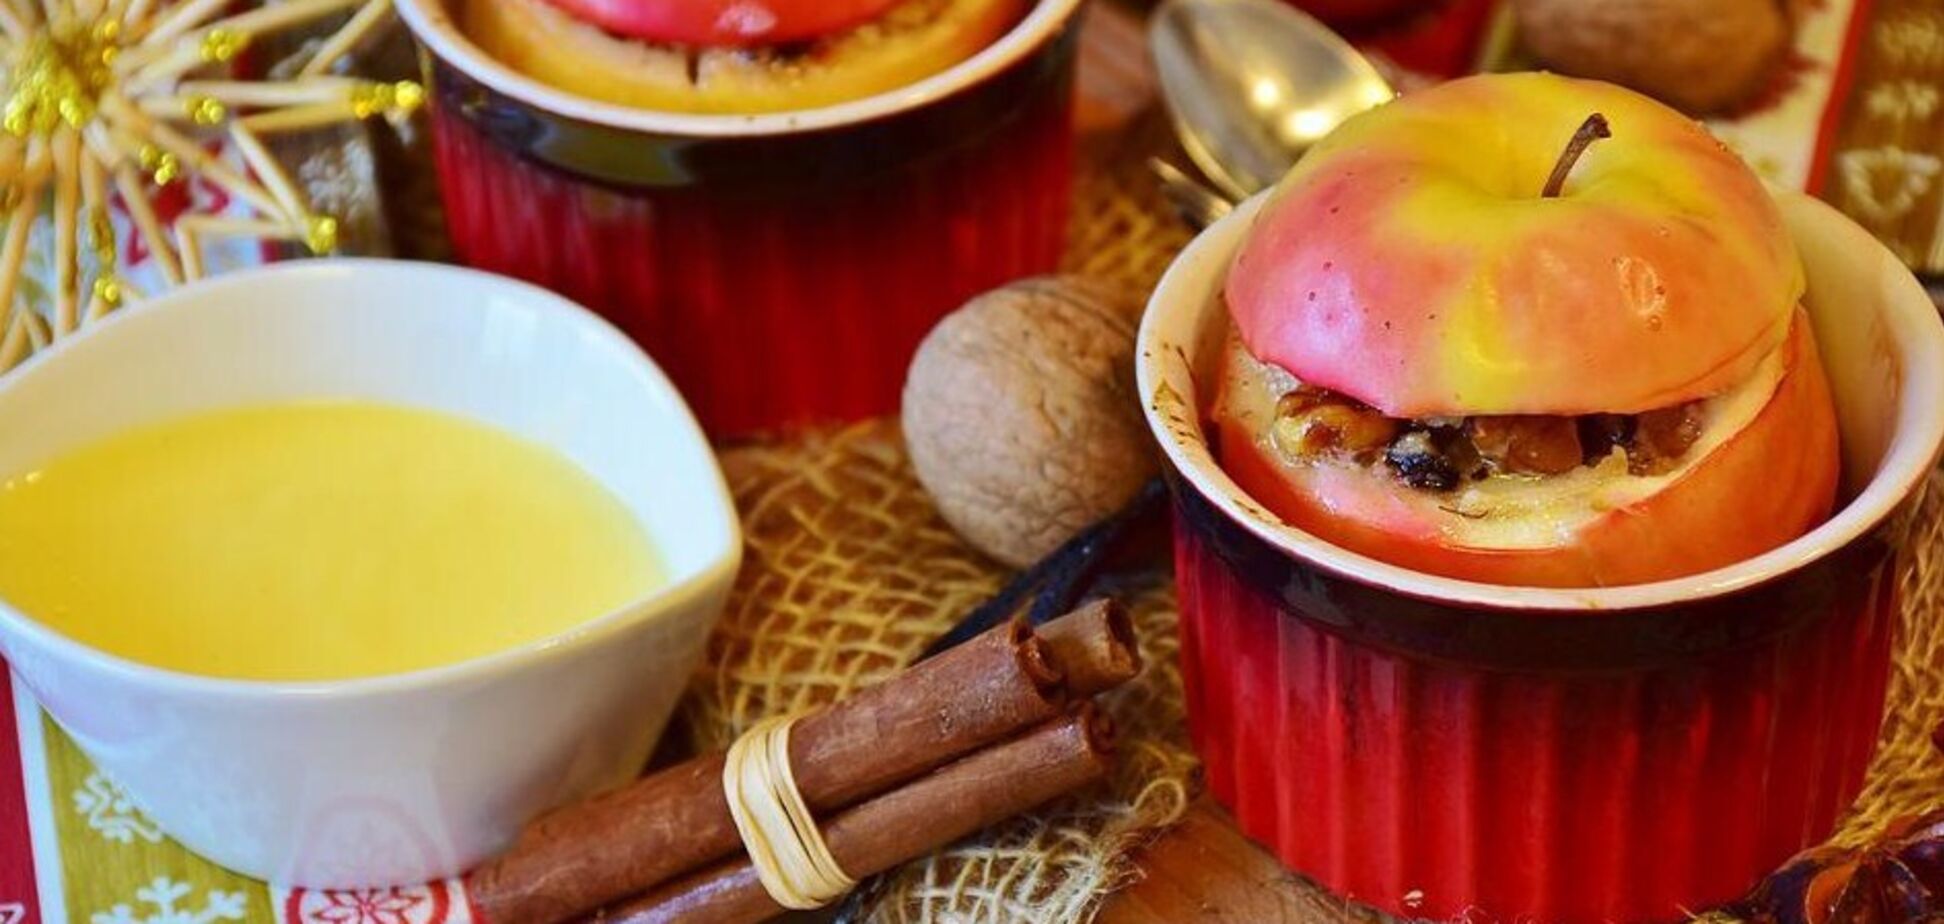 Что приготовить из яблок и творога на завтрак: рецептом поделилась Лилия Цвит